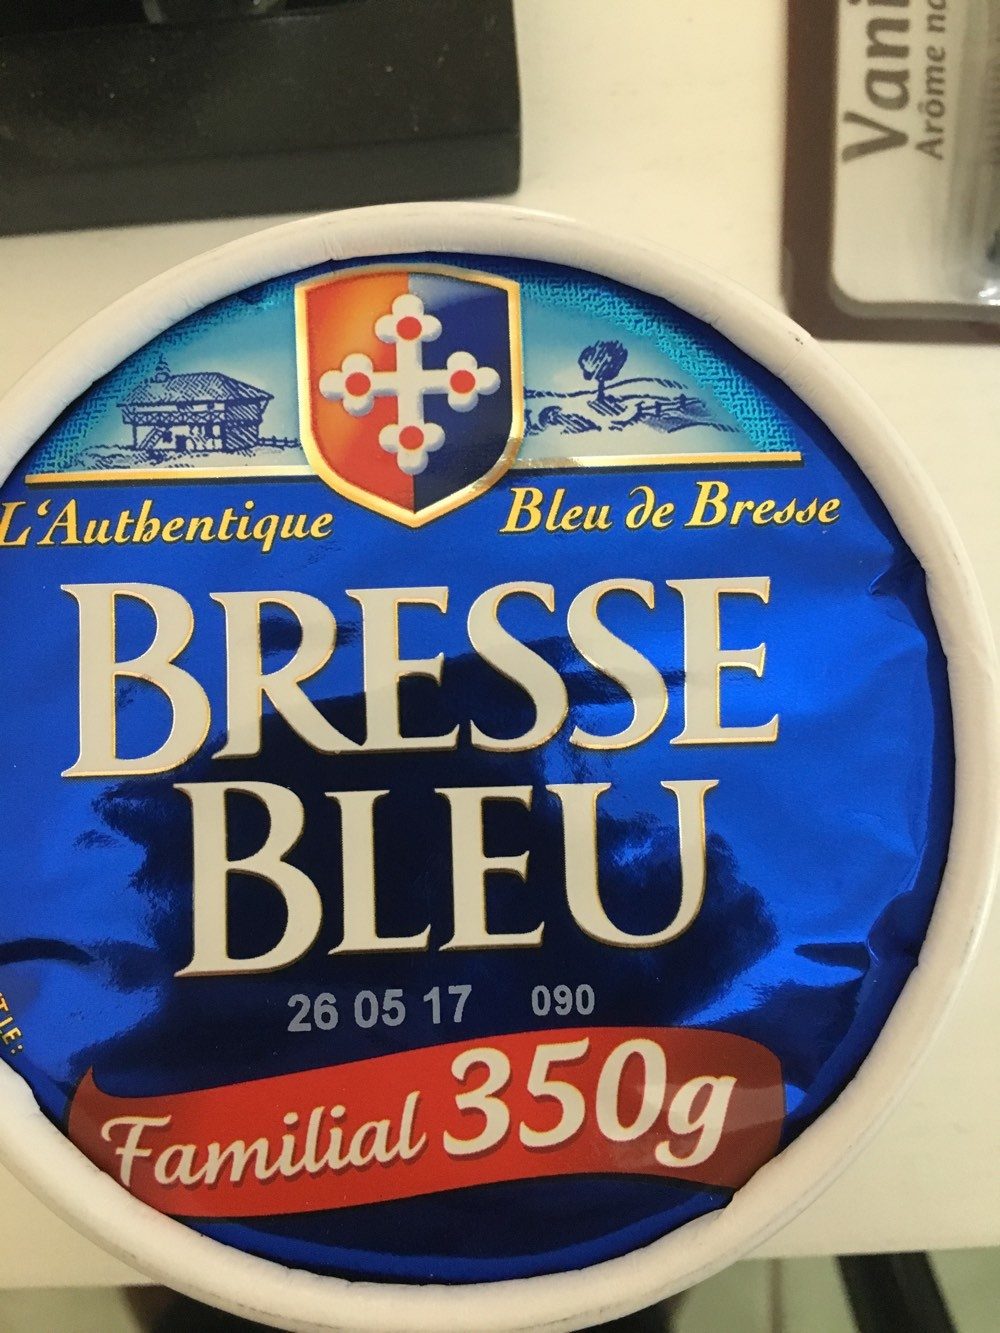 Bleu de Bresse - familial - Product - fr